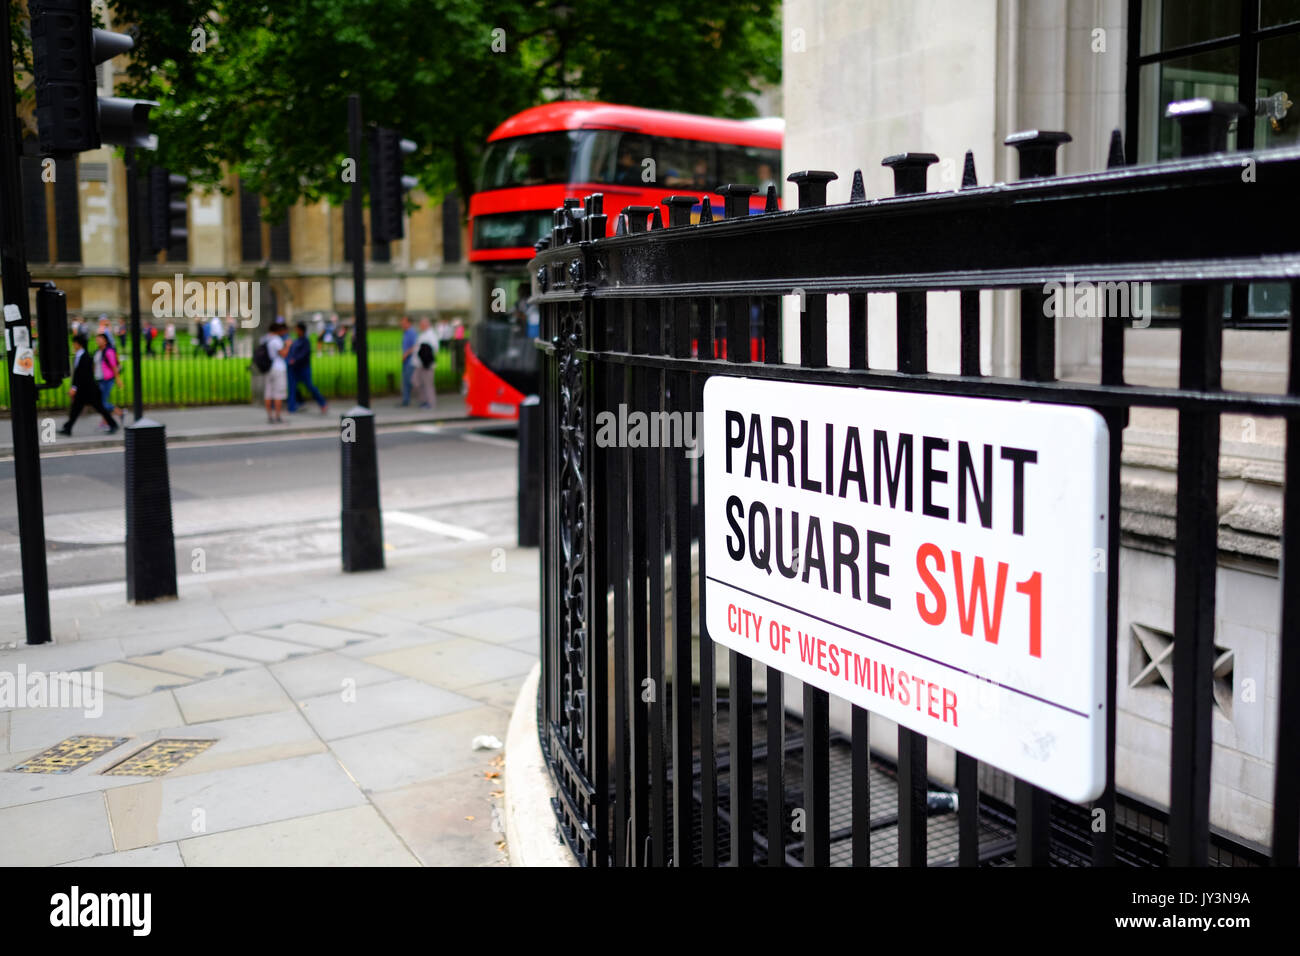 Plaque de rue de la place du Parlement à Londres, SW1 avec un bus rouge à l'arrière-plan Banque D'Images